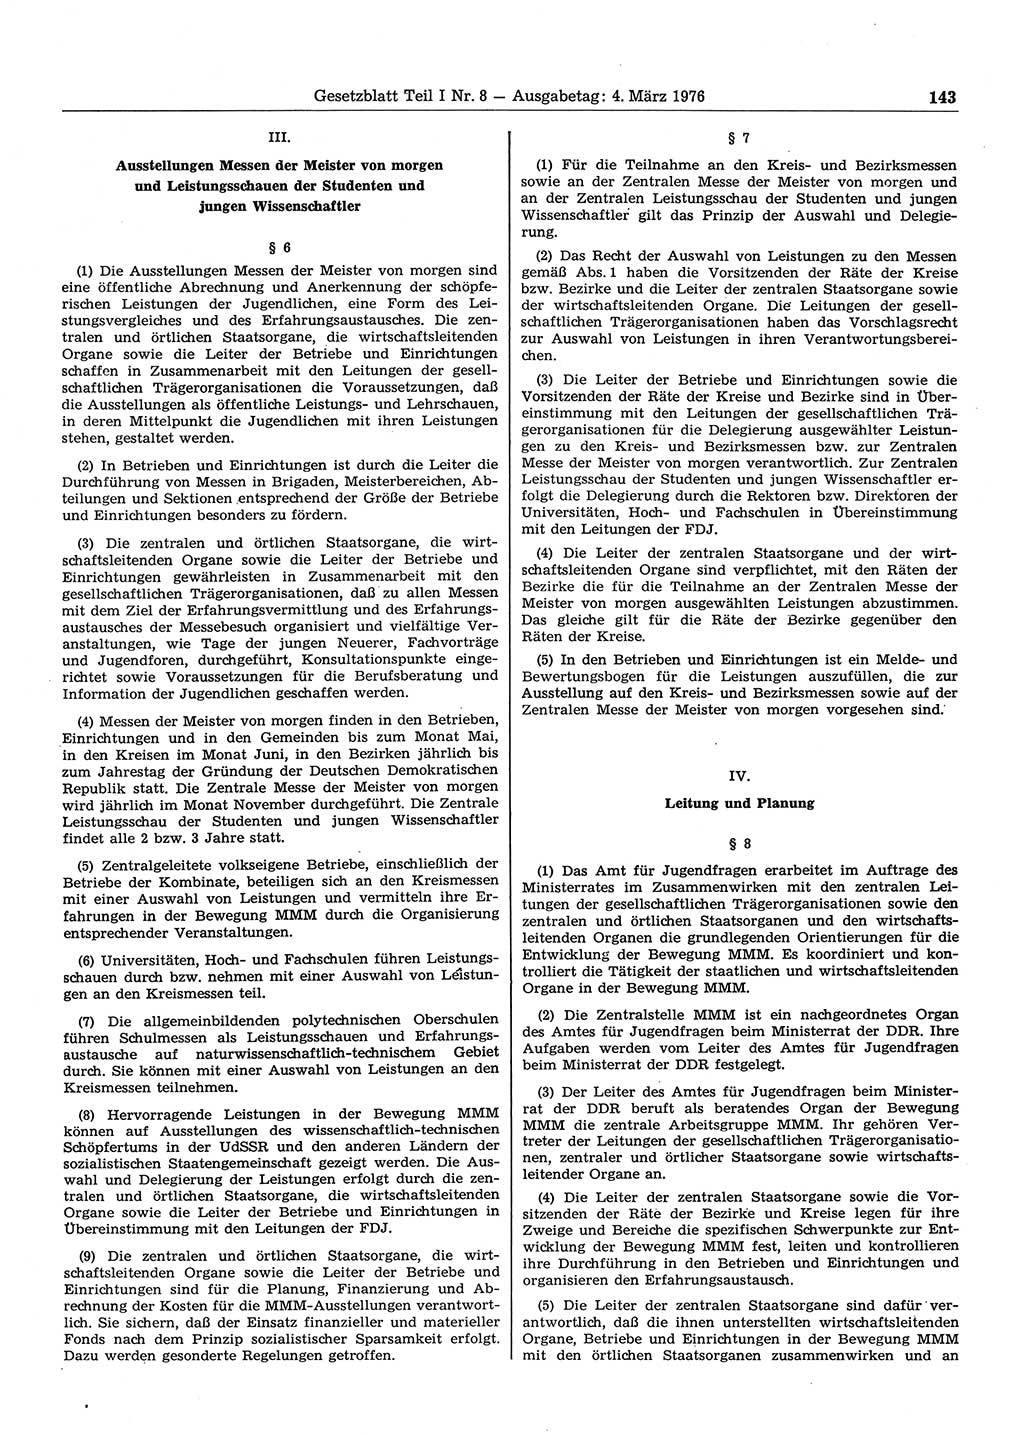 Gesetzblatt (GBl.) der Deutschen Demokratischen Republik (DDR) Teil Ⅰ 1976, Seite 143 (GBl. DDR Ⅰ 1976, S. 143)